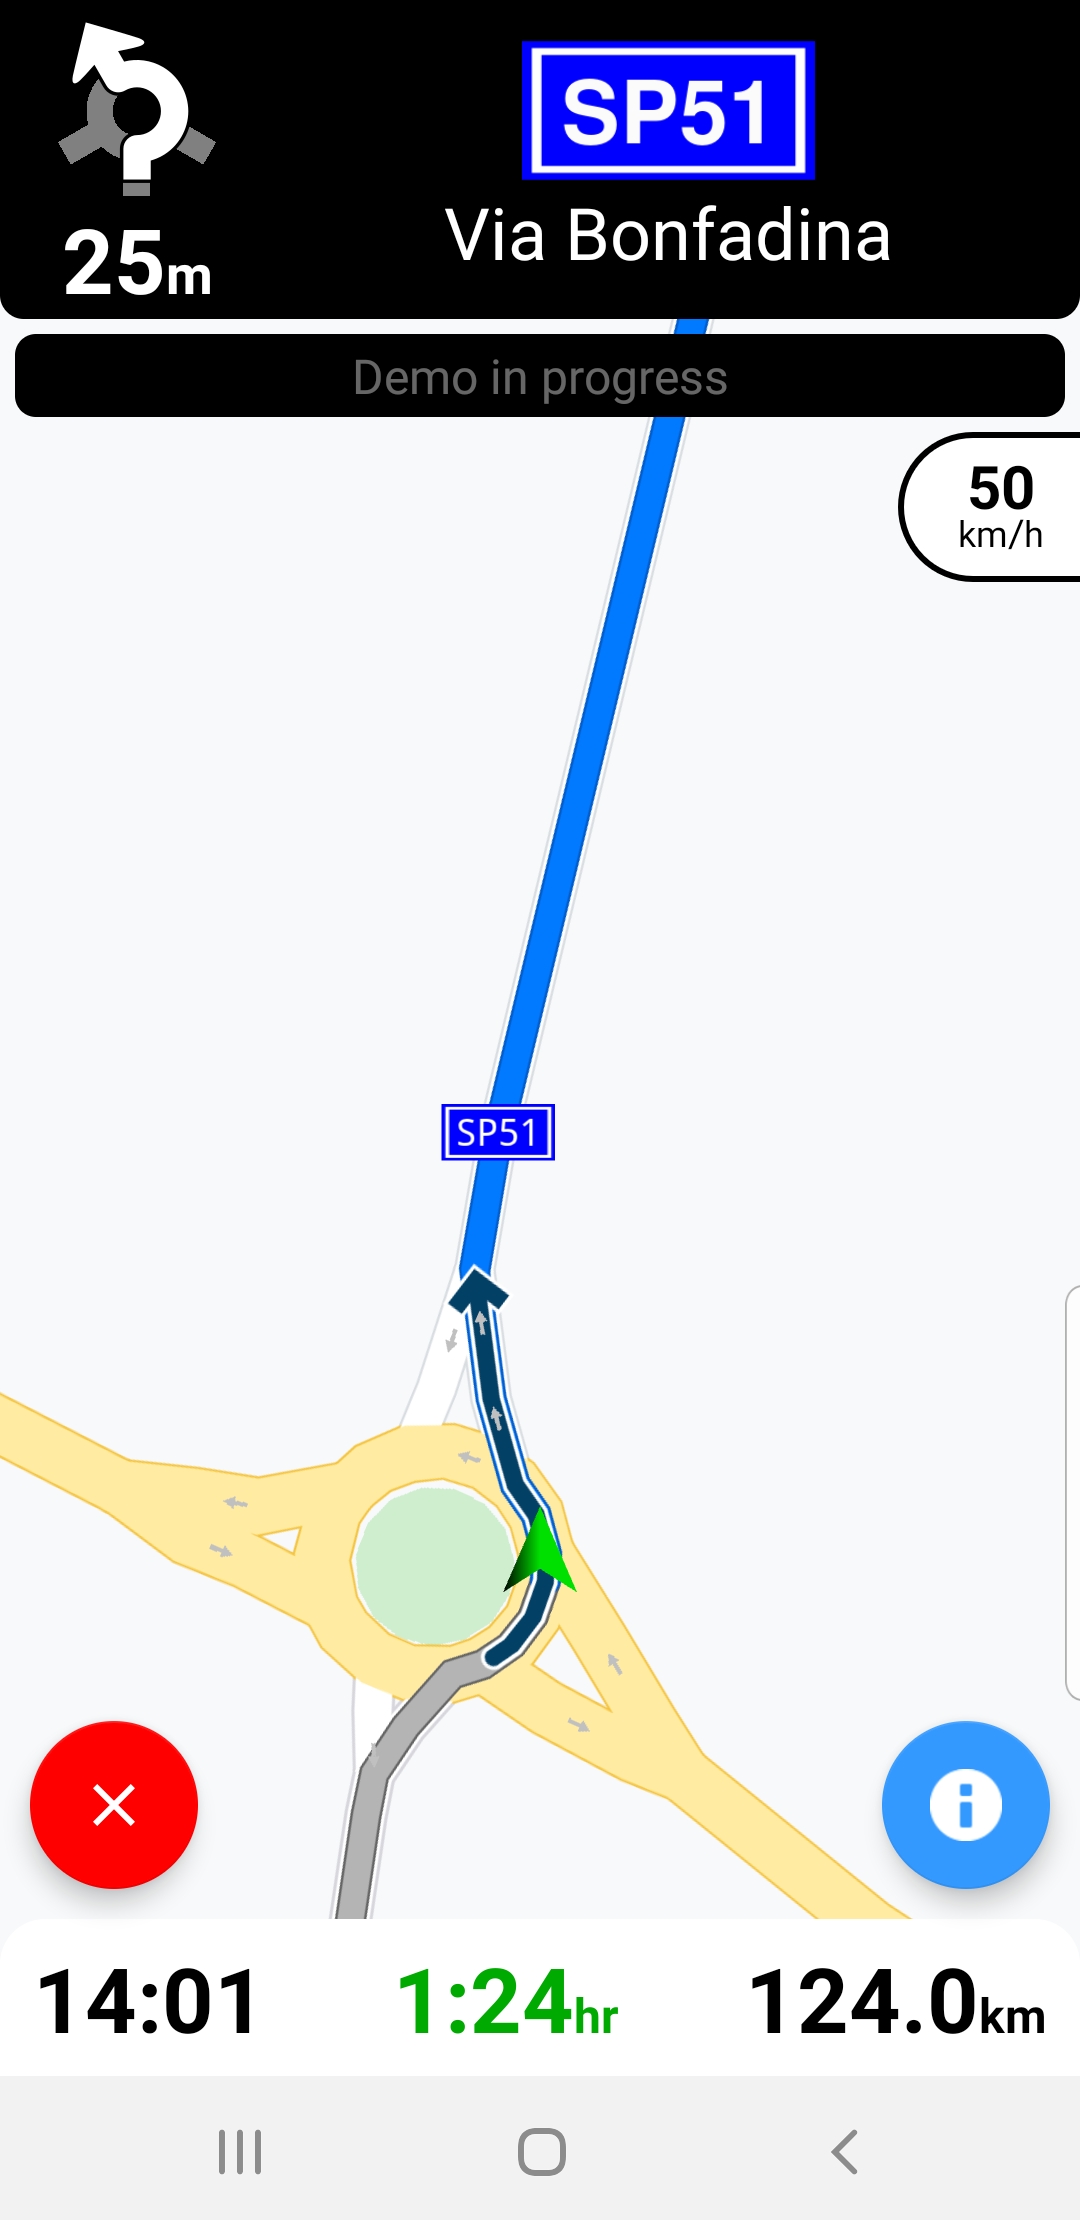 Android example navigation simulation screenshot